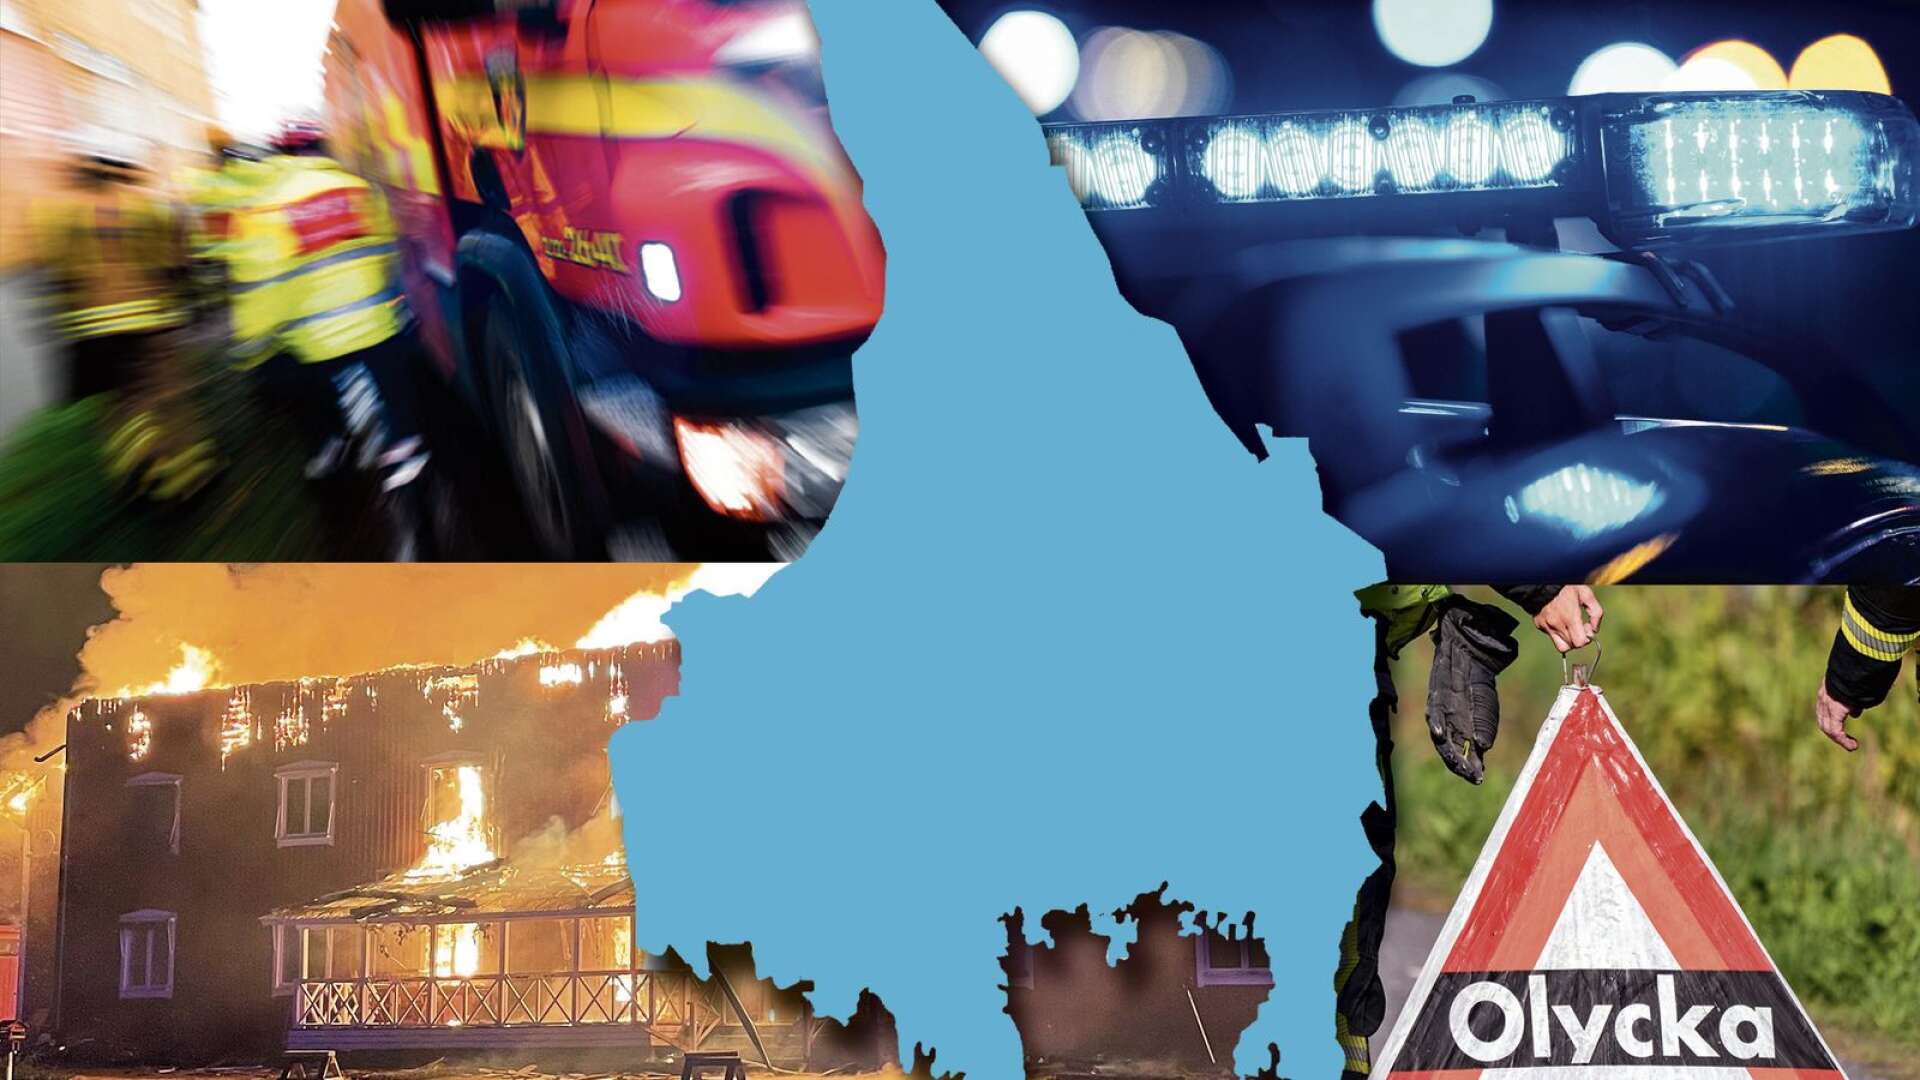 Polisen om natten i Värmland: ”Värme och alkohol med i bilden”